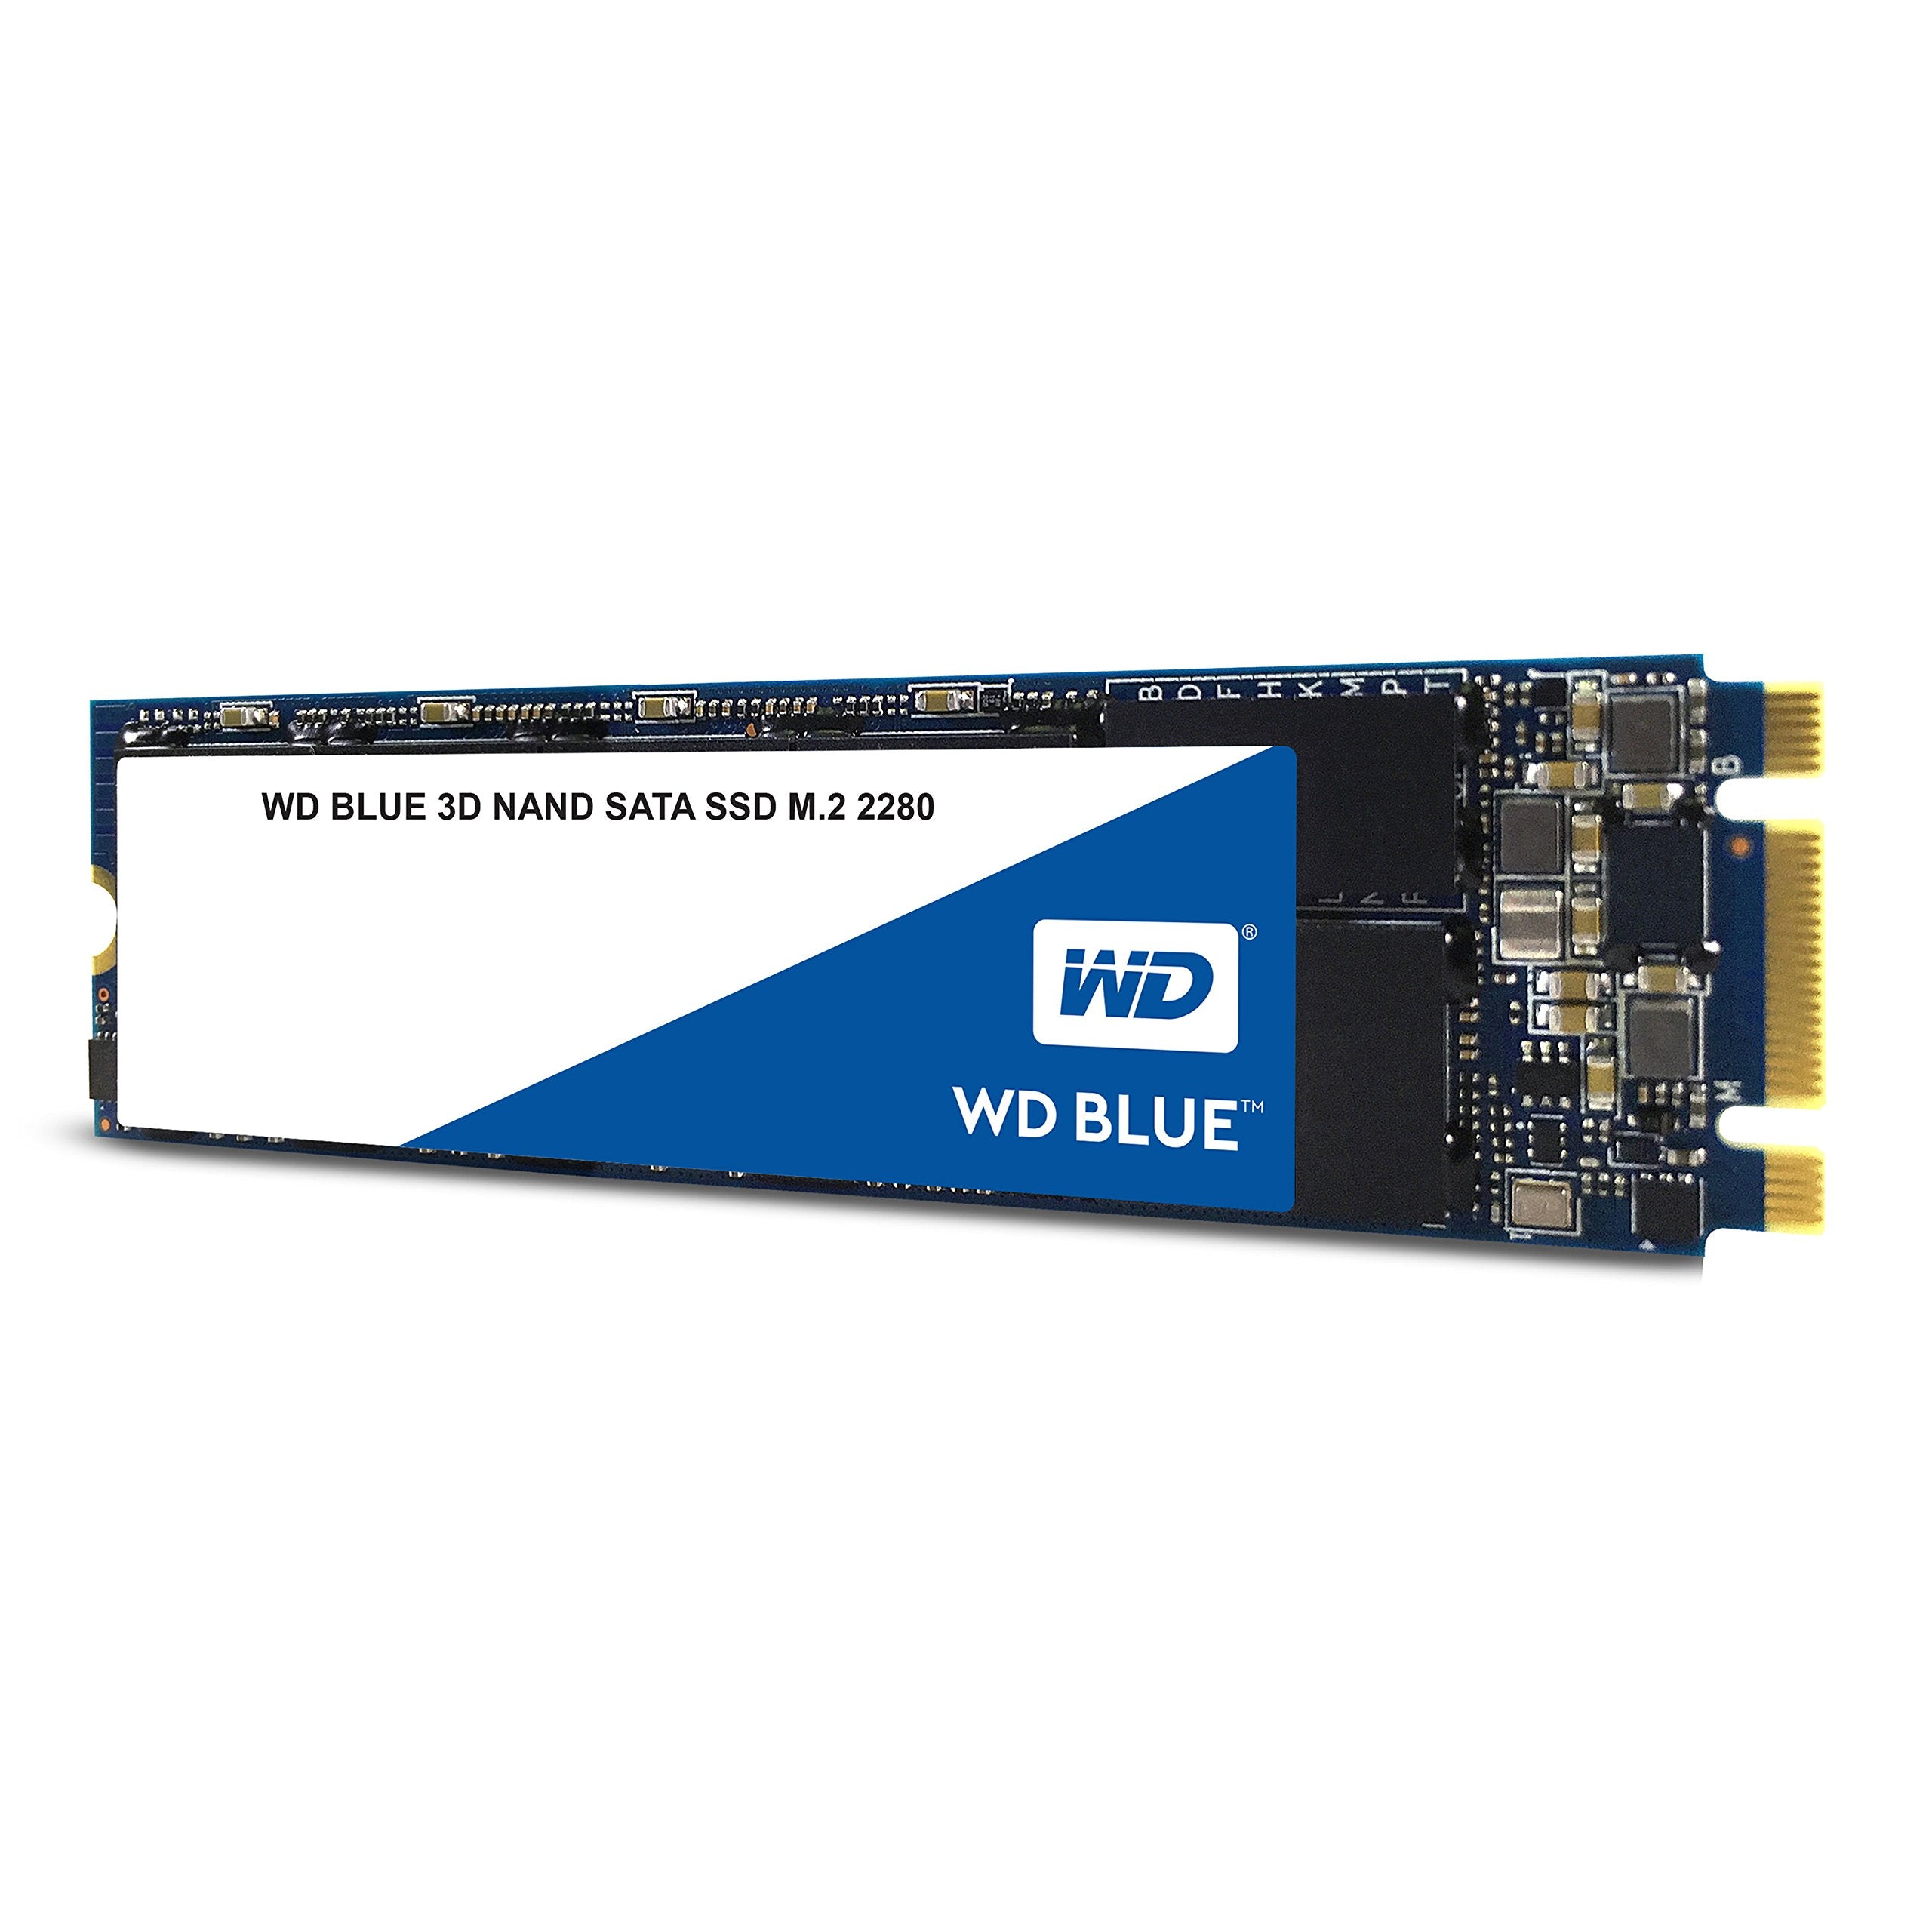 WD Blue 3D NAND 250GB Internal PC SSD - SATA III 6 Gb/s, M.2 2280, Up to 550 MB/s - WDS250G2B0B